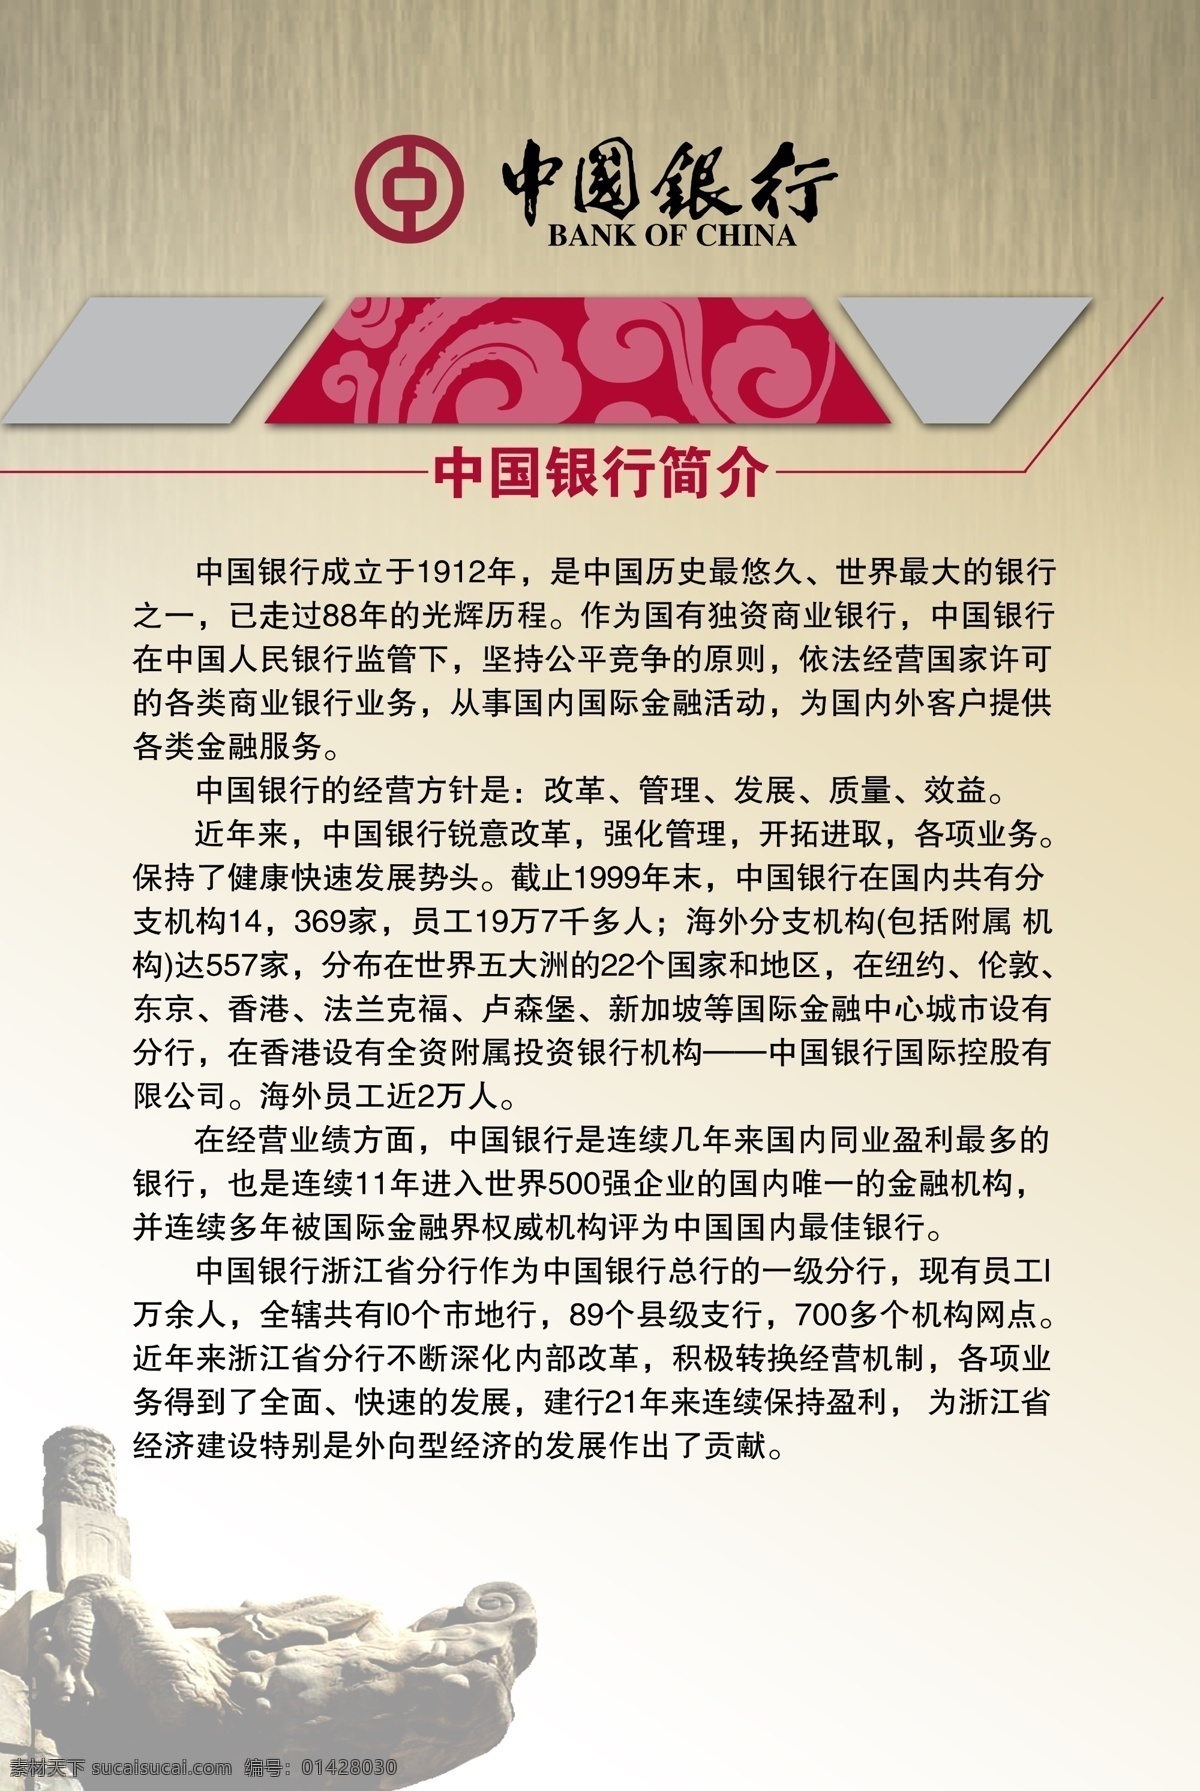 中国银行 中国银行简介 简介 版面 制度 中国风 古典 银行制度 银行版面 企业文化 企业制度 制度版面 展板模板 白色